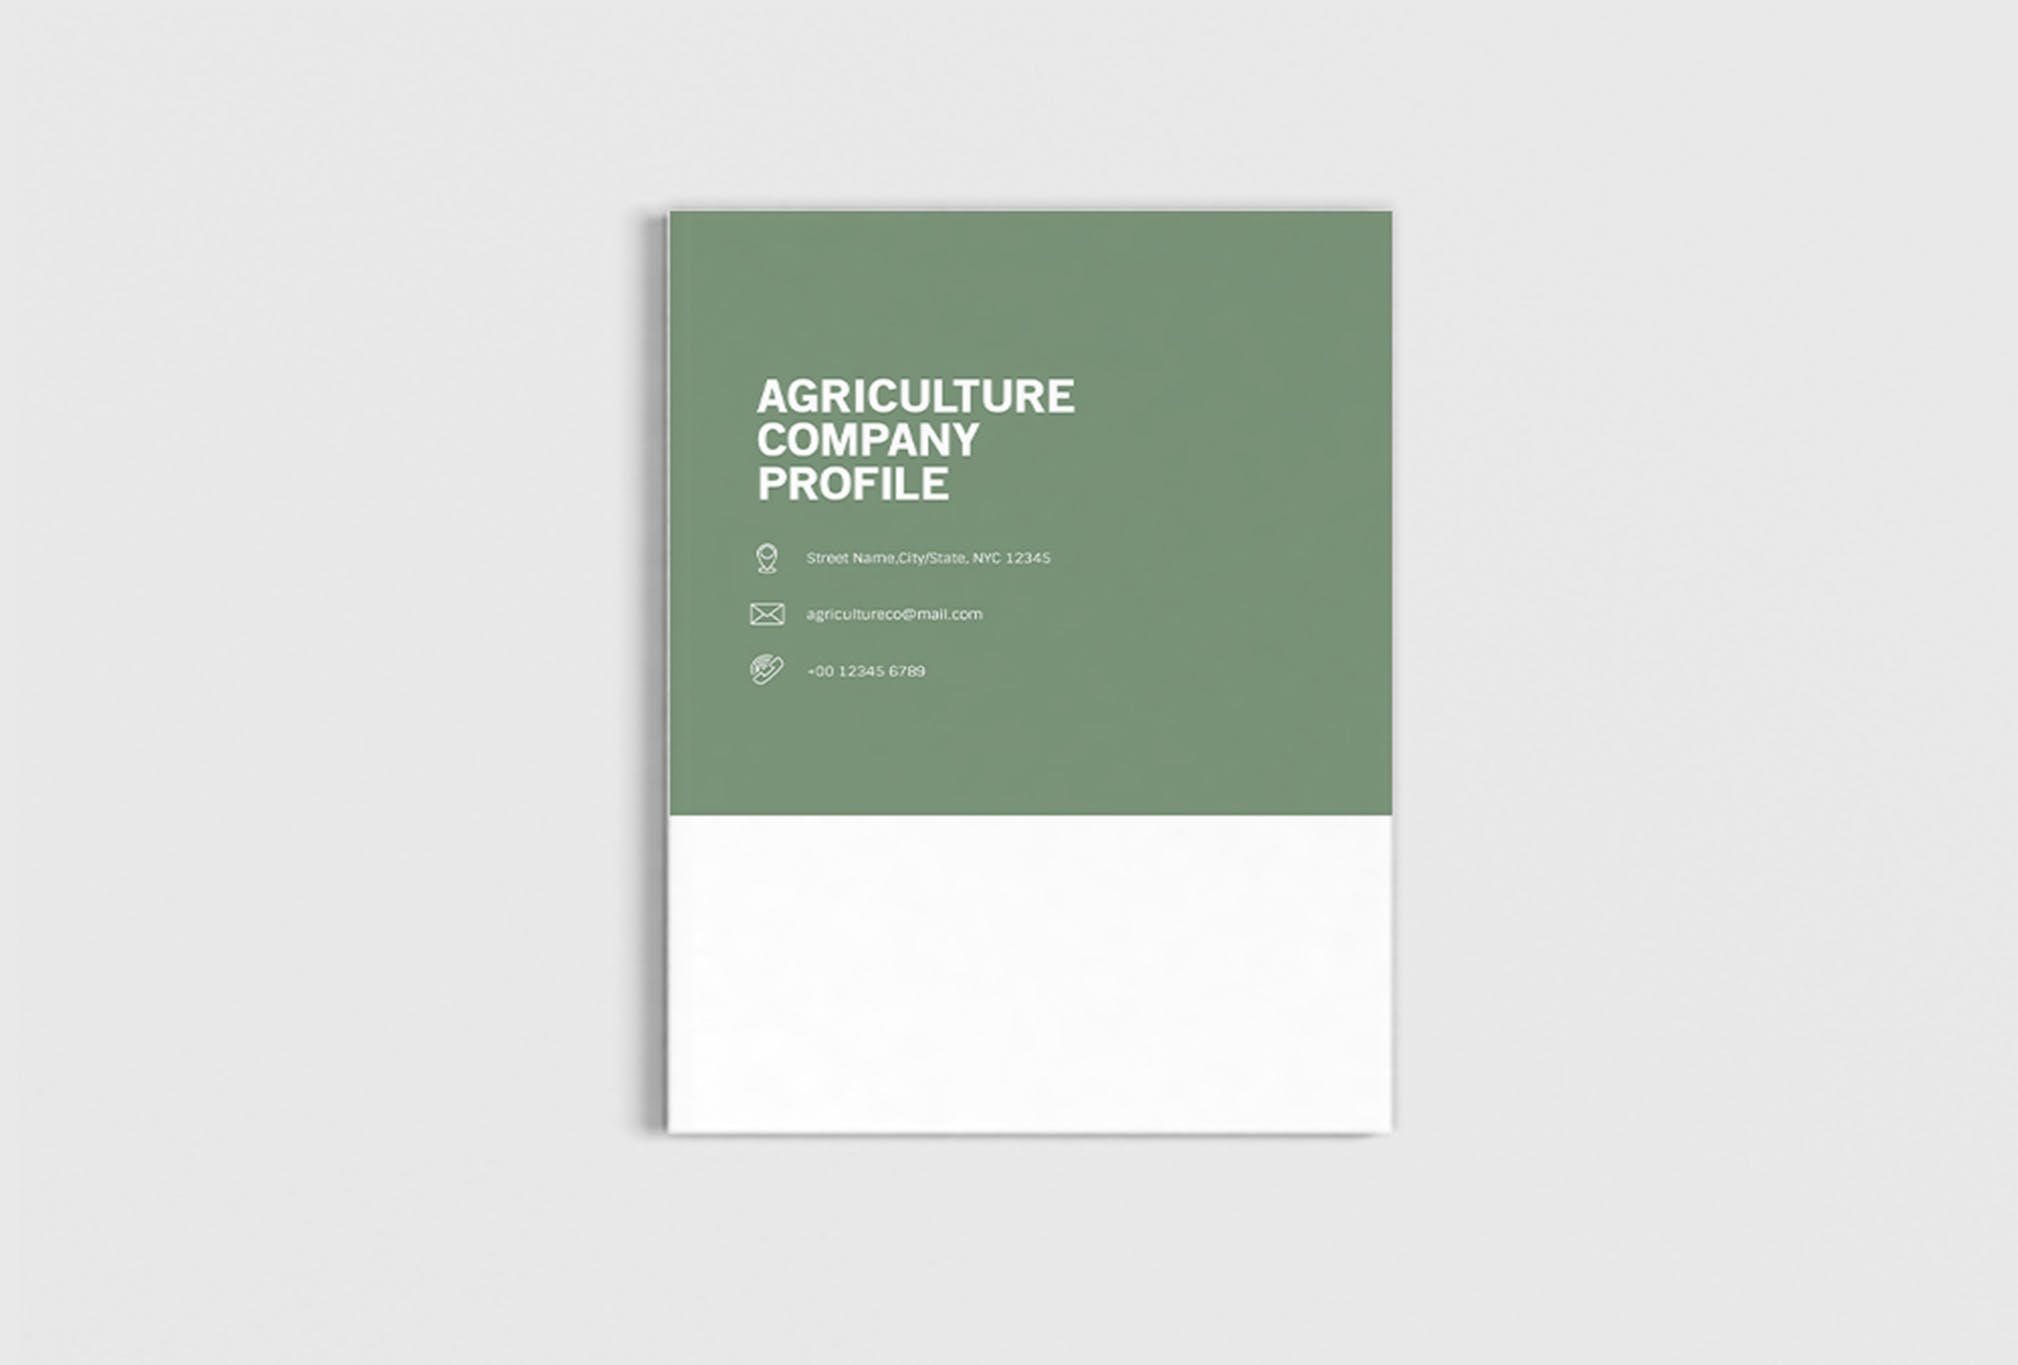 农业绿色食品公司简介企业画册设计模板 Agriculture Company Profile插图(2)